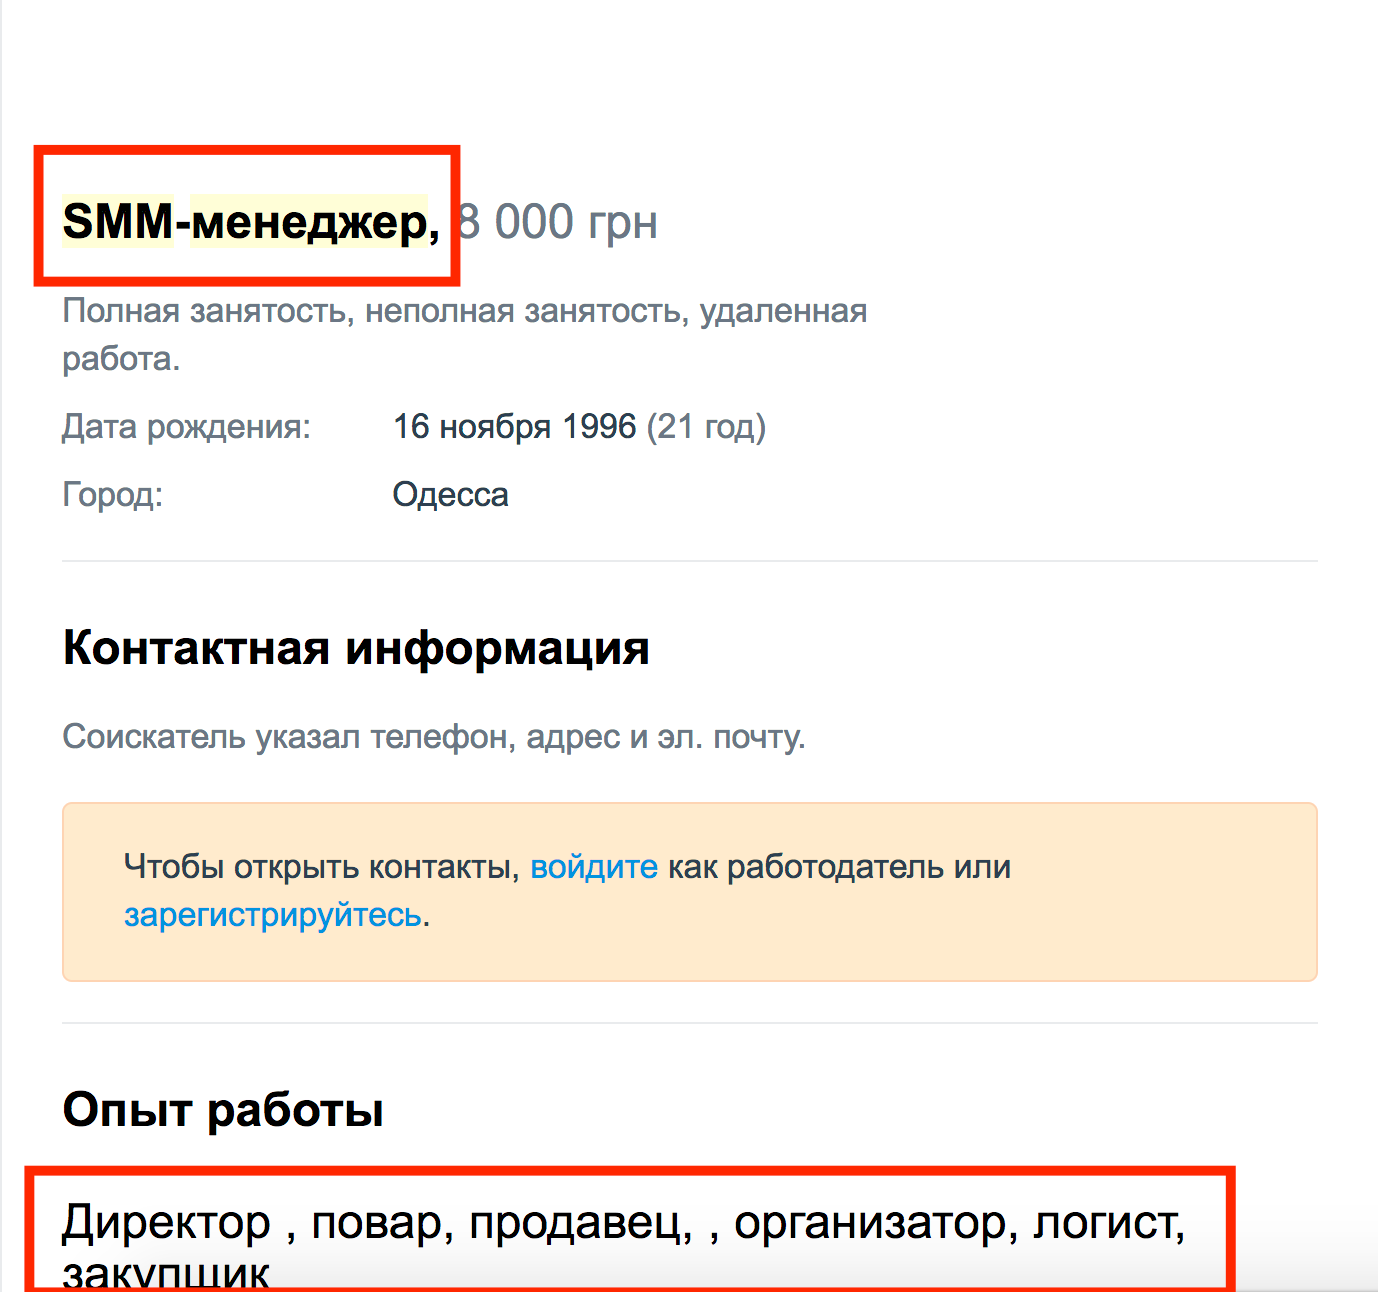 Pochemu_SMM_v_Ukraine_net1